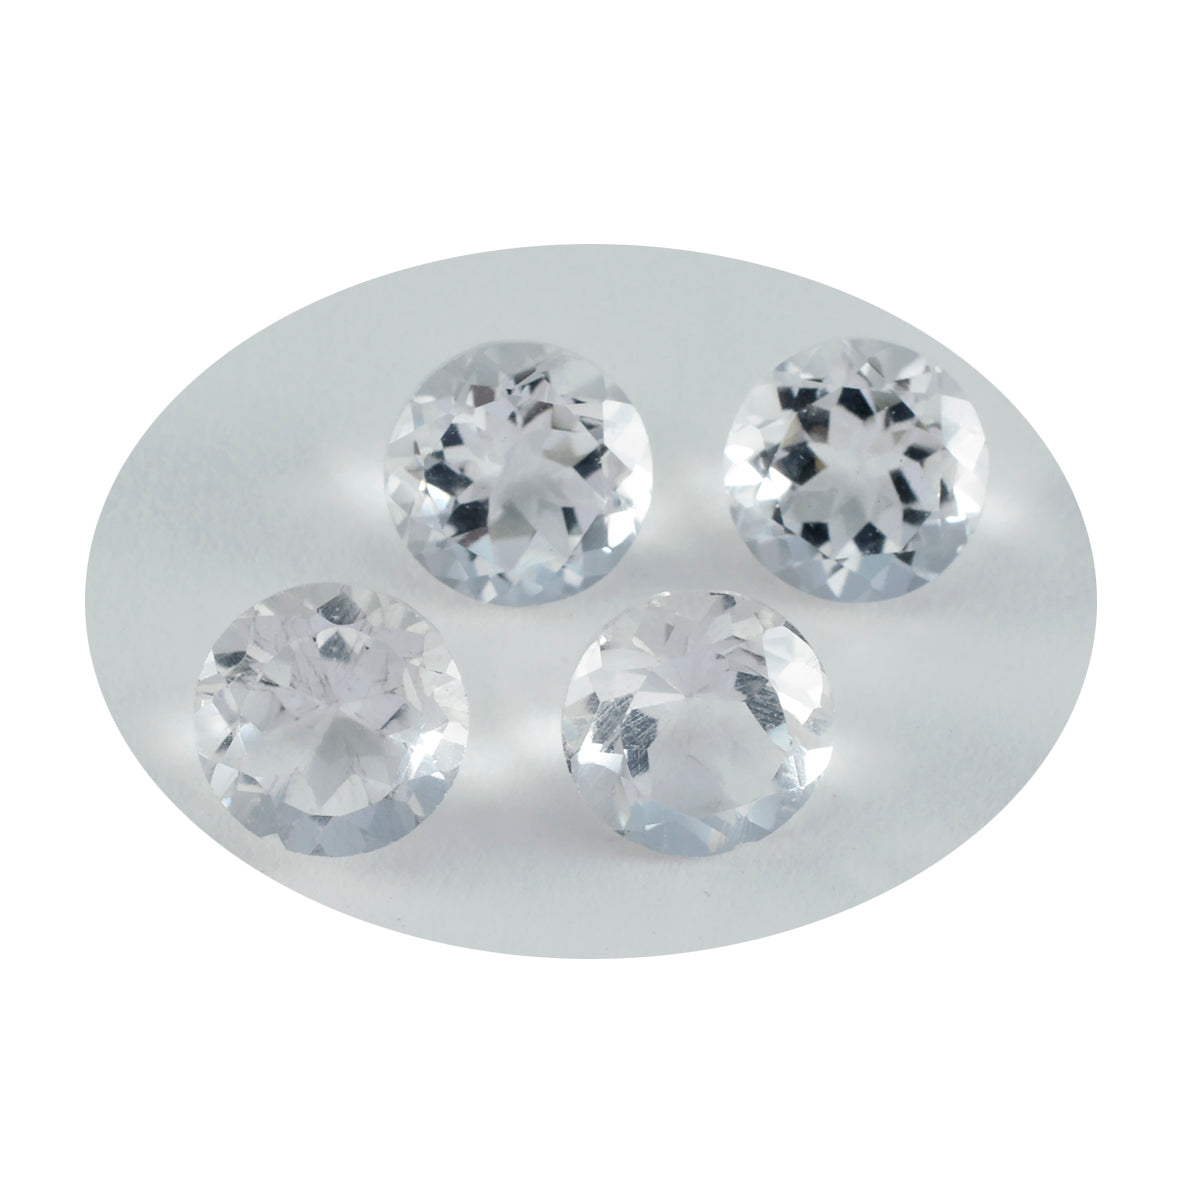 riyogems 1pc cristallo di quarzo bianco sfaccettato 7x7 mm forma rotonda una pietra preziosa di qualità